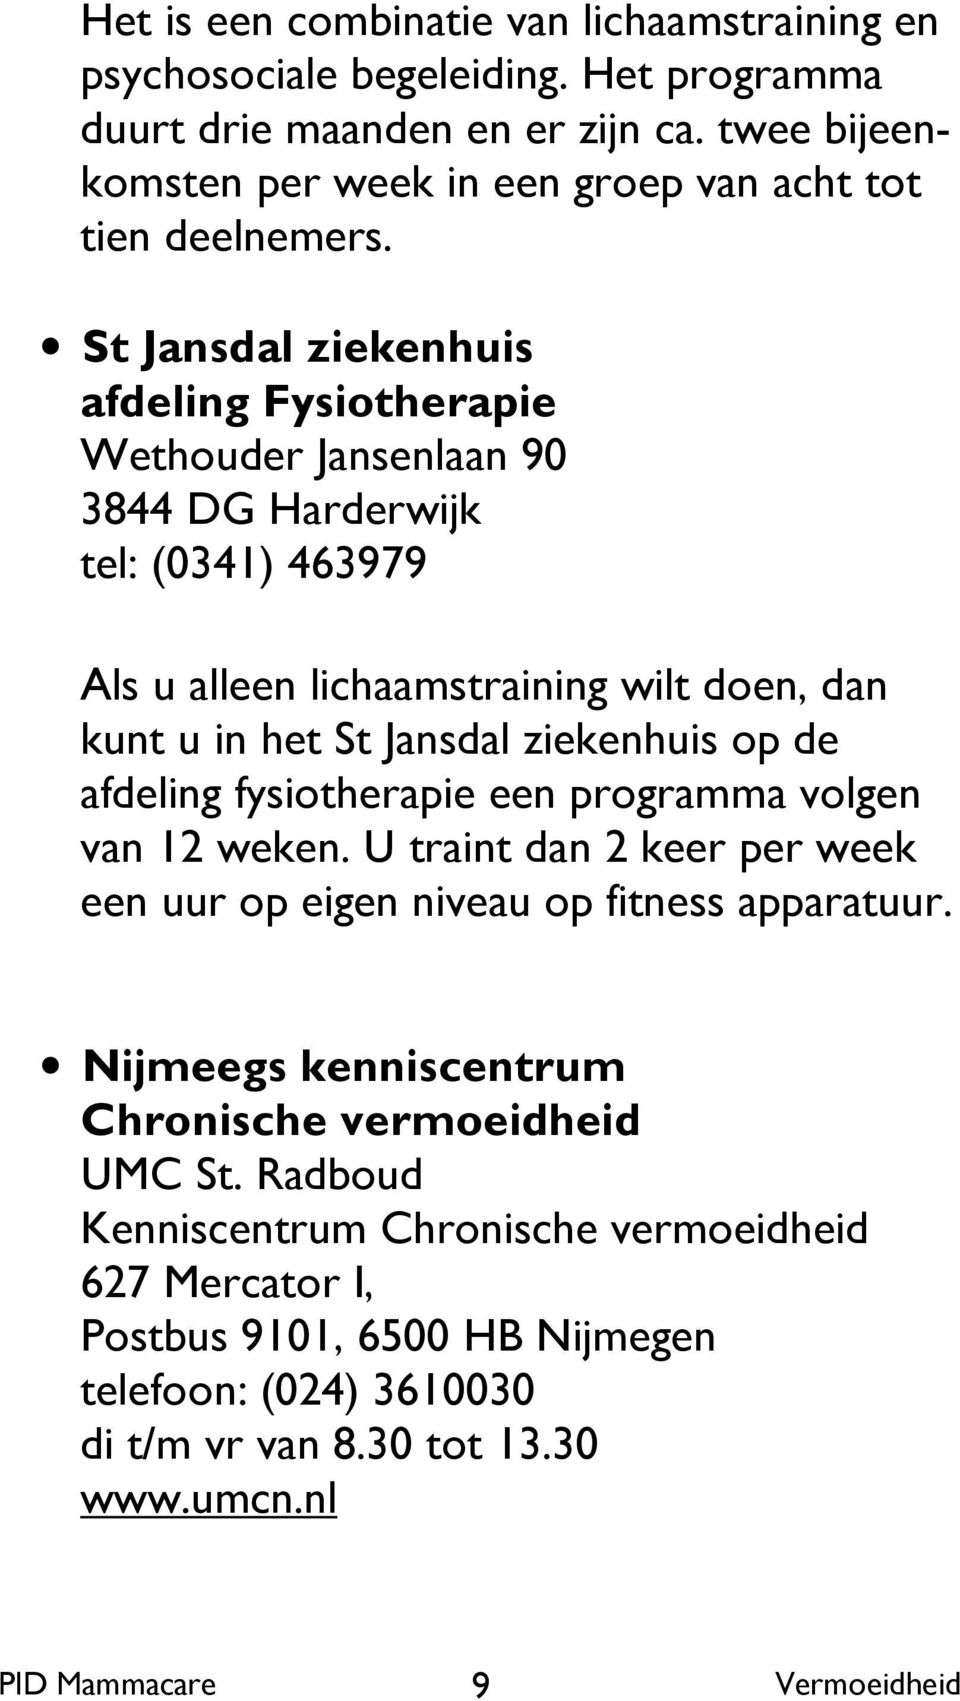 St Jansdal ziekenhuis afdeling Fysiotherapie Wethouder Jansenlaan 90 3844 DG Harderwijk tel: (0341) 463979 Als u alleen lichaamstraining wilt doen, dan kunt u in het St Jansdal